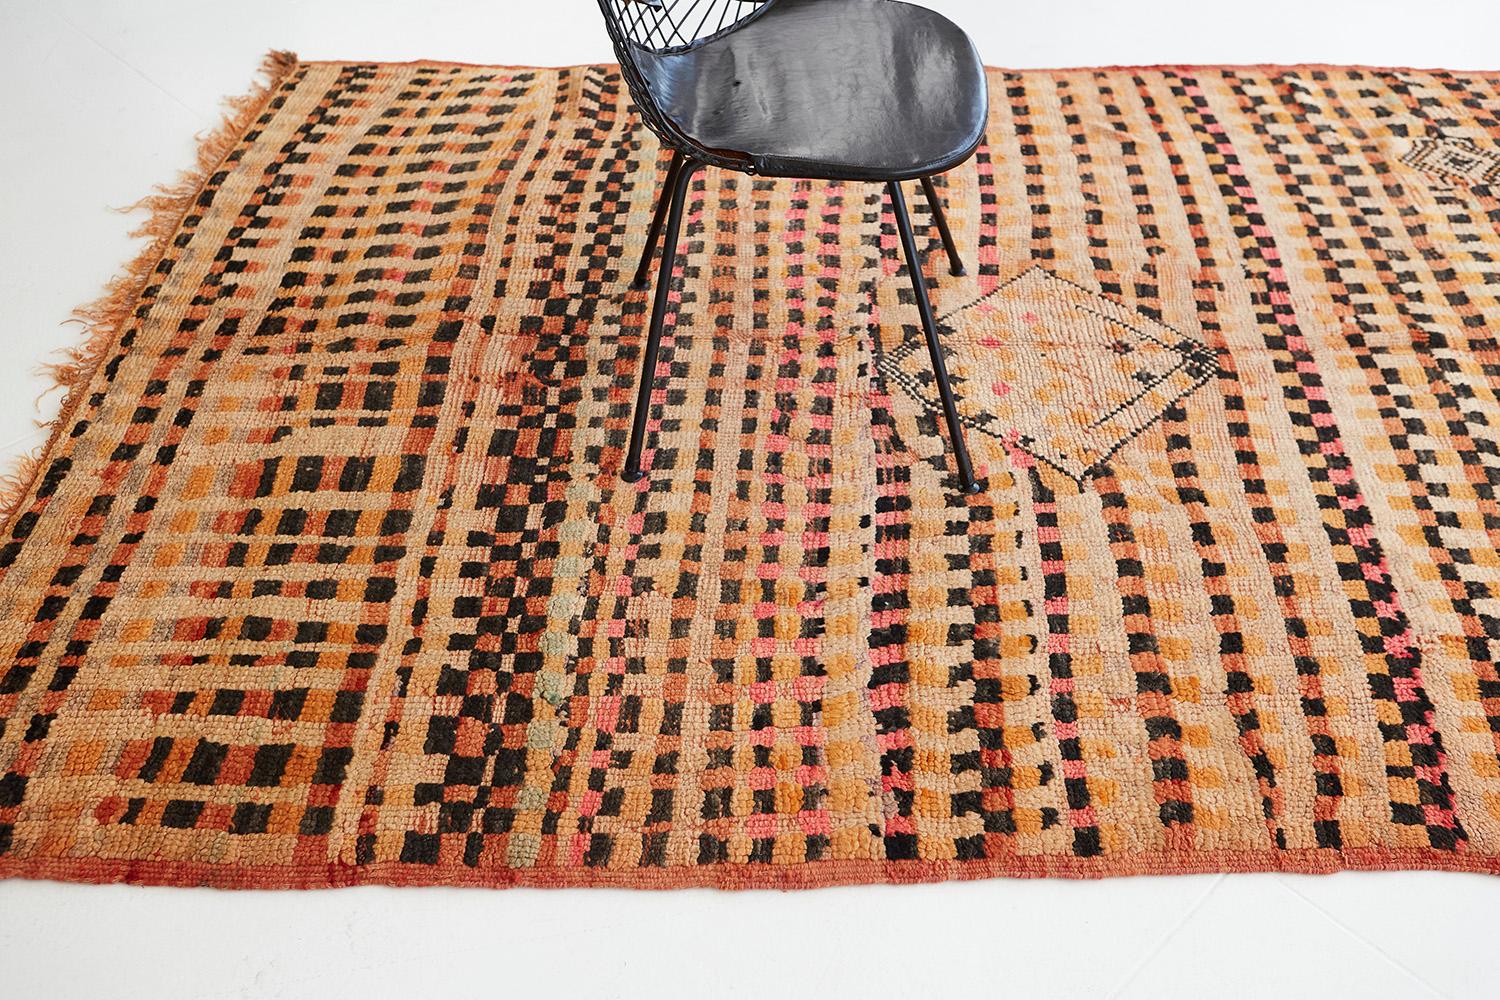 Dieser marokkanische Teppich im Vintage-Stil besticht durch seinen unwiderstehlichen Charme und sein verführerisches Design. Dieser außergewöhnliche Teppich zeigt ein atemberaubendes Schachbrettmuster mit lebendigem Effekt. In der Symbolik der alten